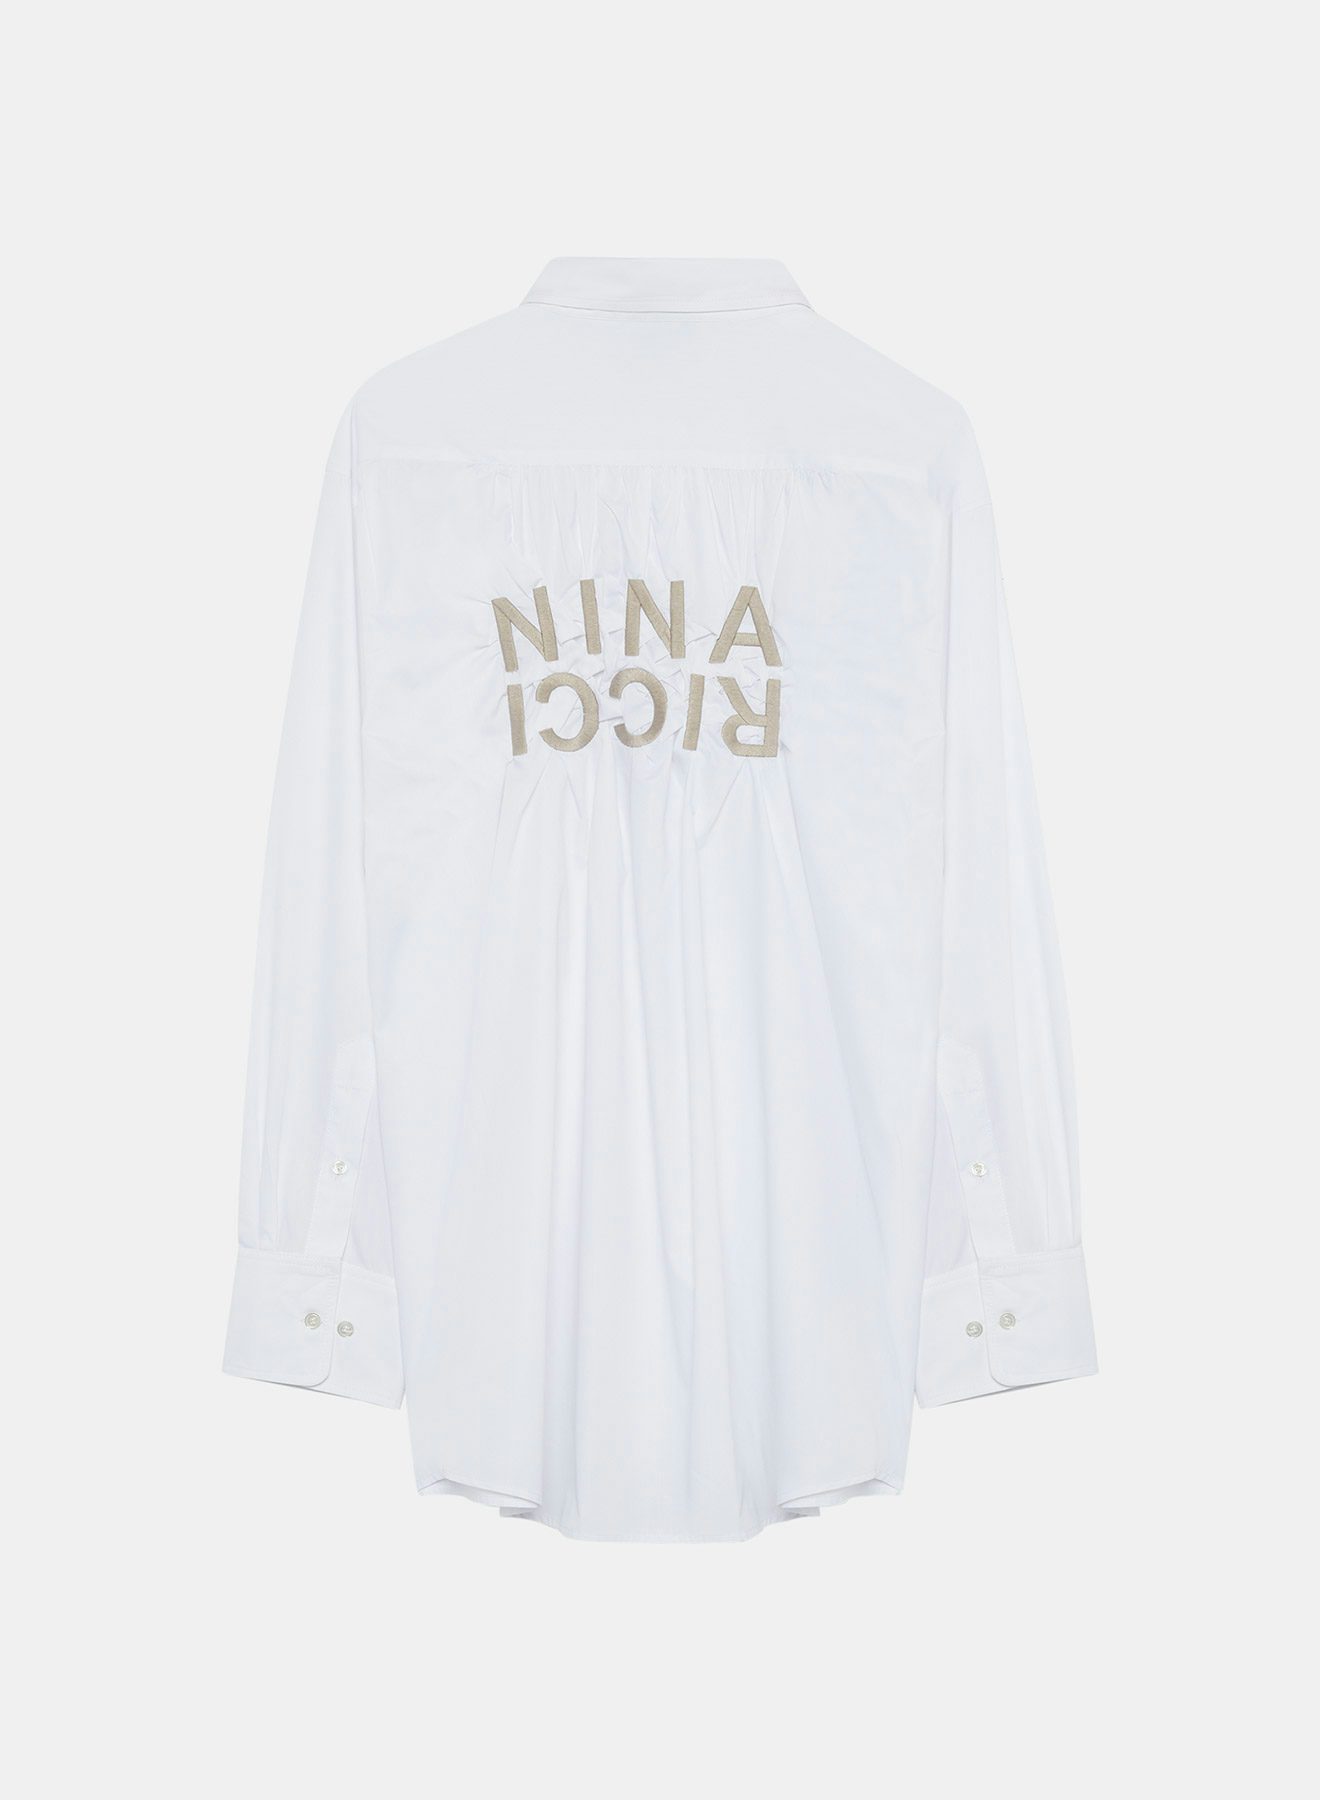 Camisa efecto arrugado blanca y gris marengo con bordado contrastado Nina Ricci en la espalda - Nina Ricci